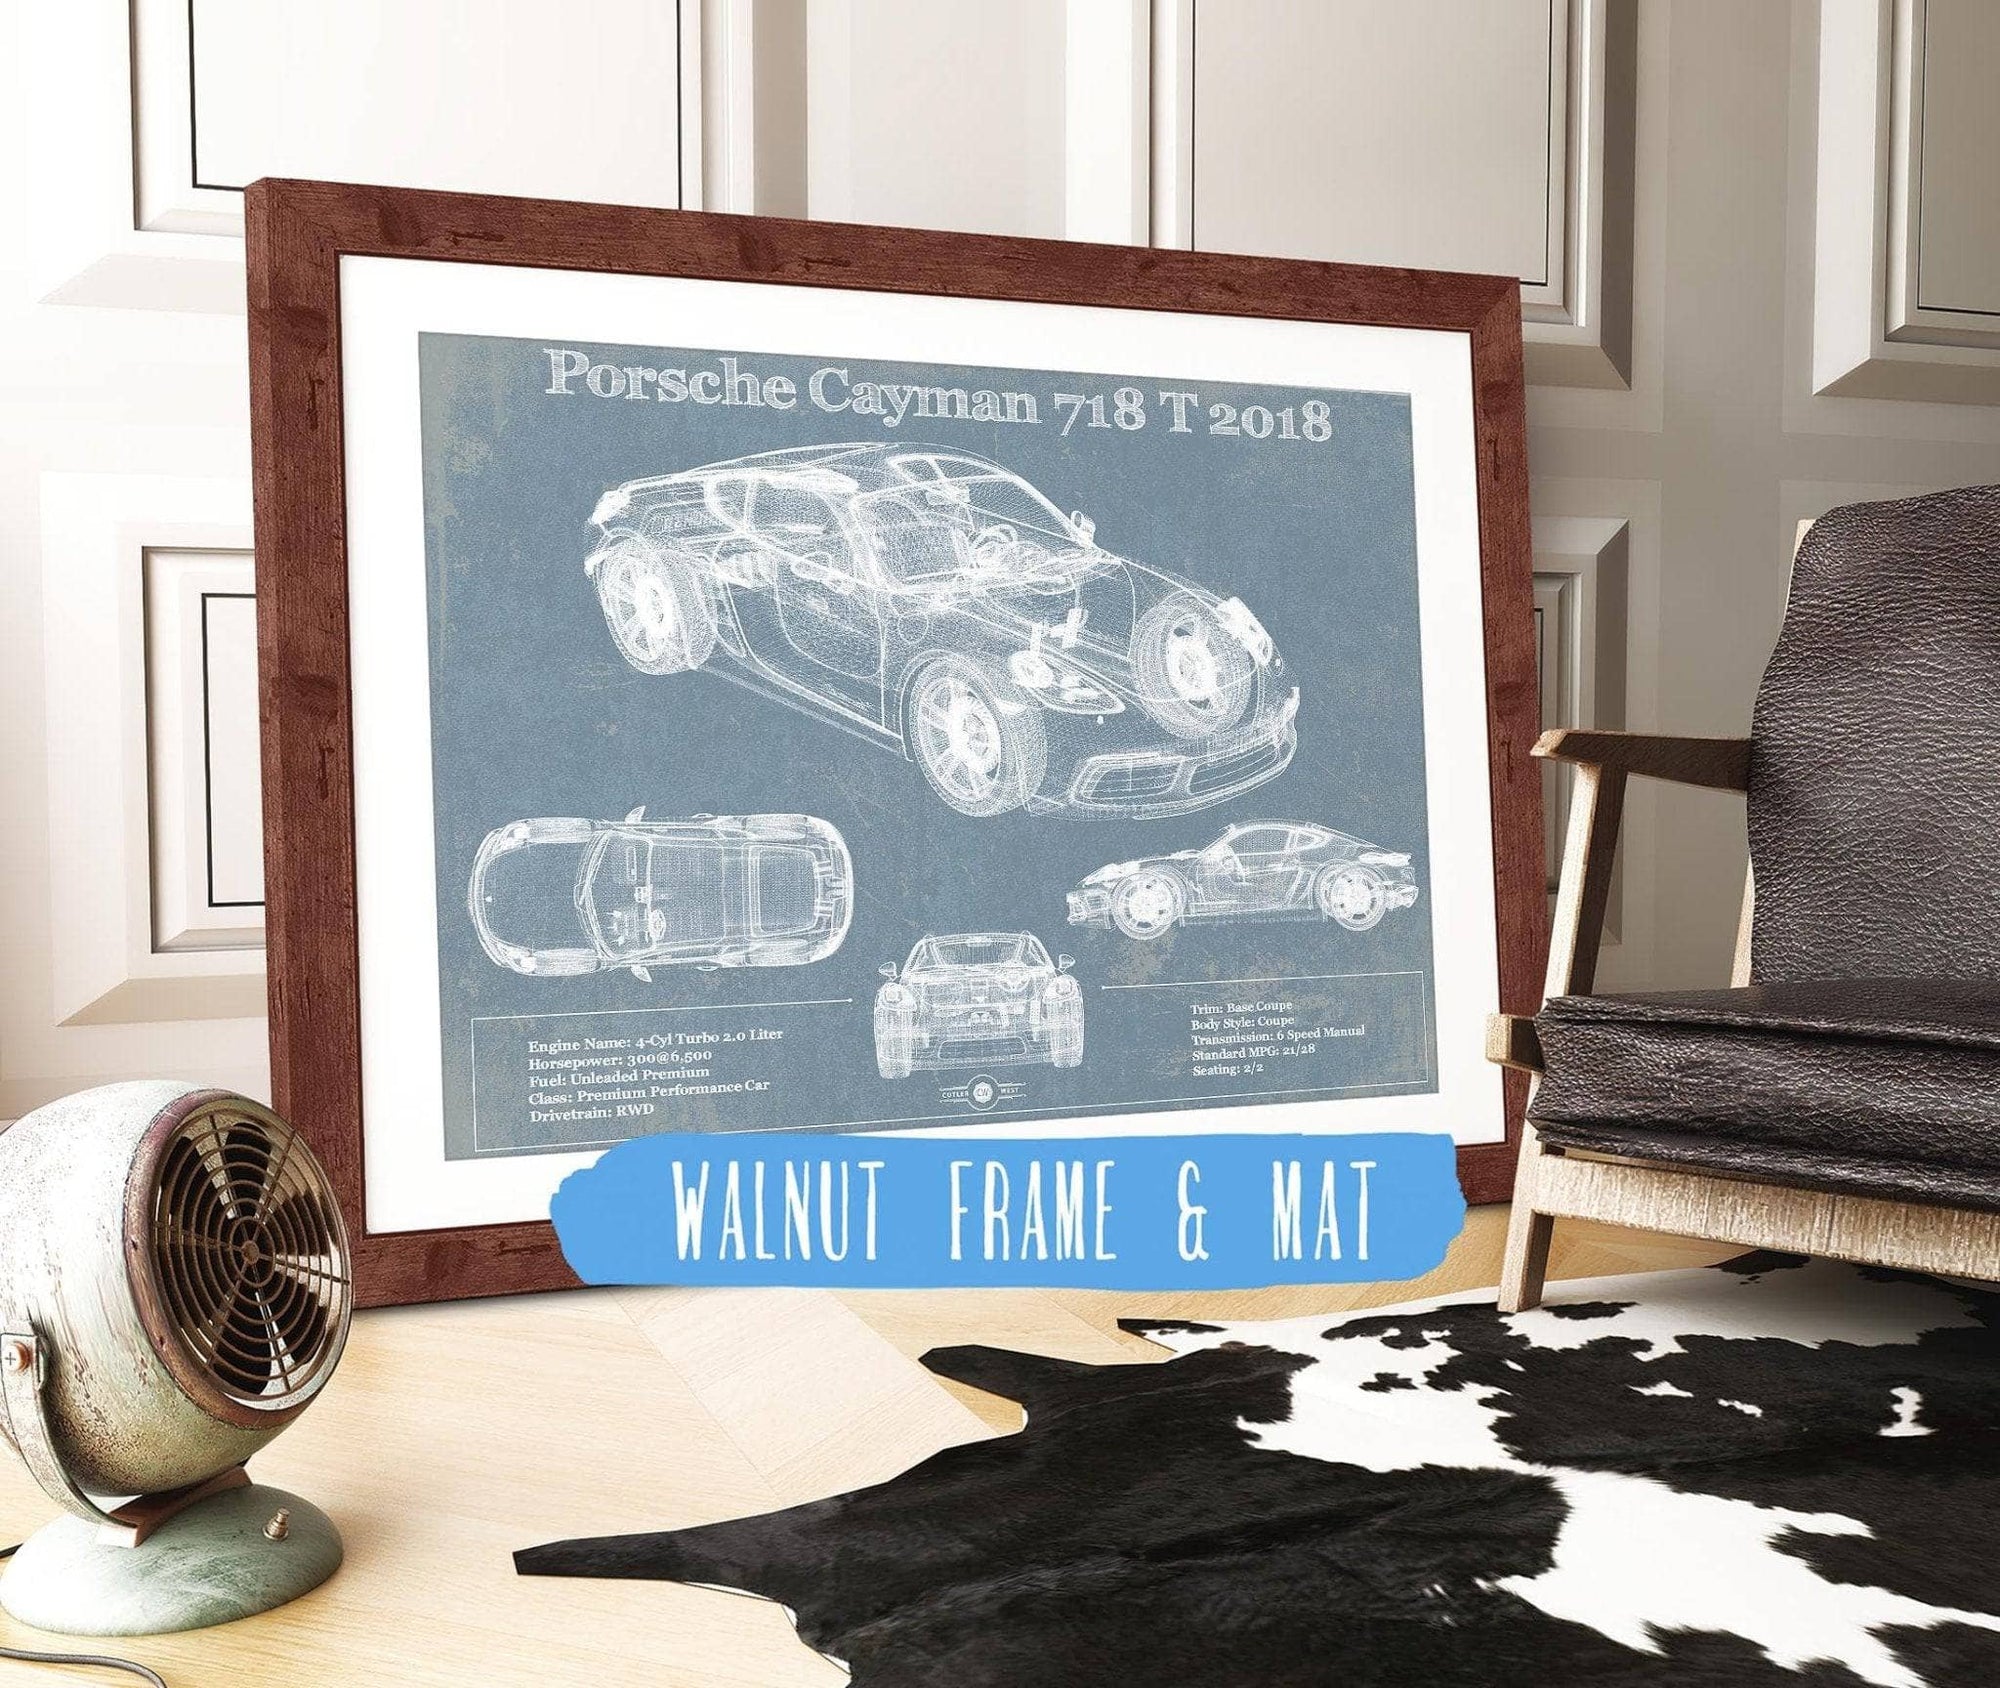 Cutler West Porsche Collection 14" x 11" / Walnut Frame & Mat Porsche Cayman 718 T 2018 Vintage Blueprint Auto Print 833110155_15504